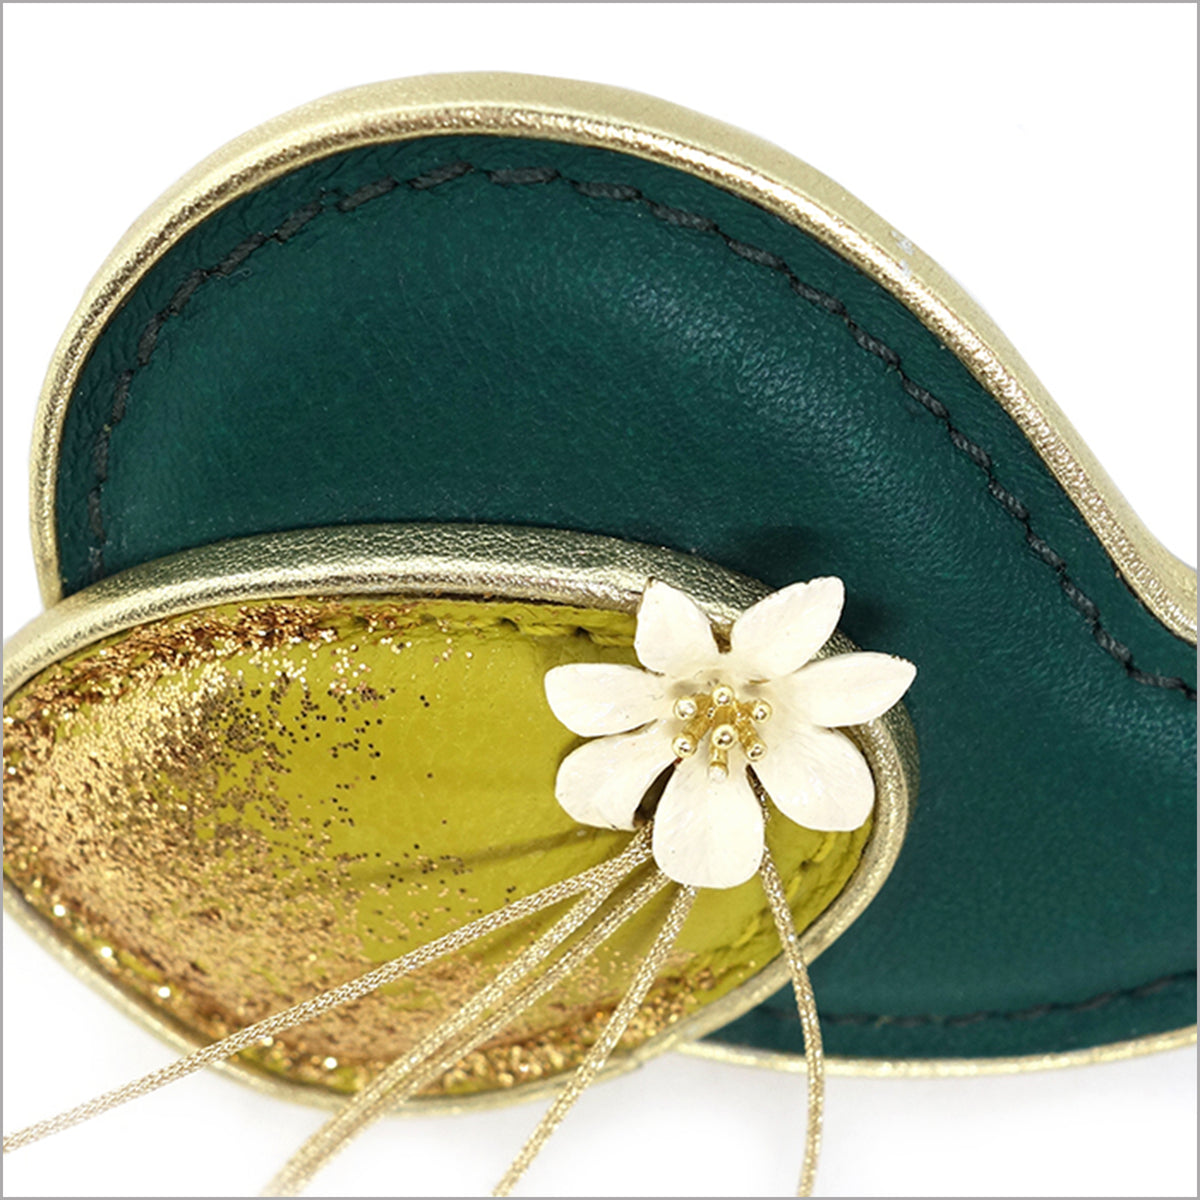 Broche cuir vert brésil et vert anis, fleur blanche et paillettes